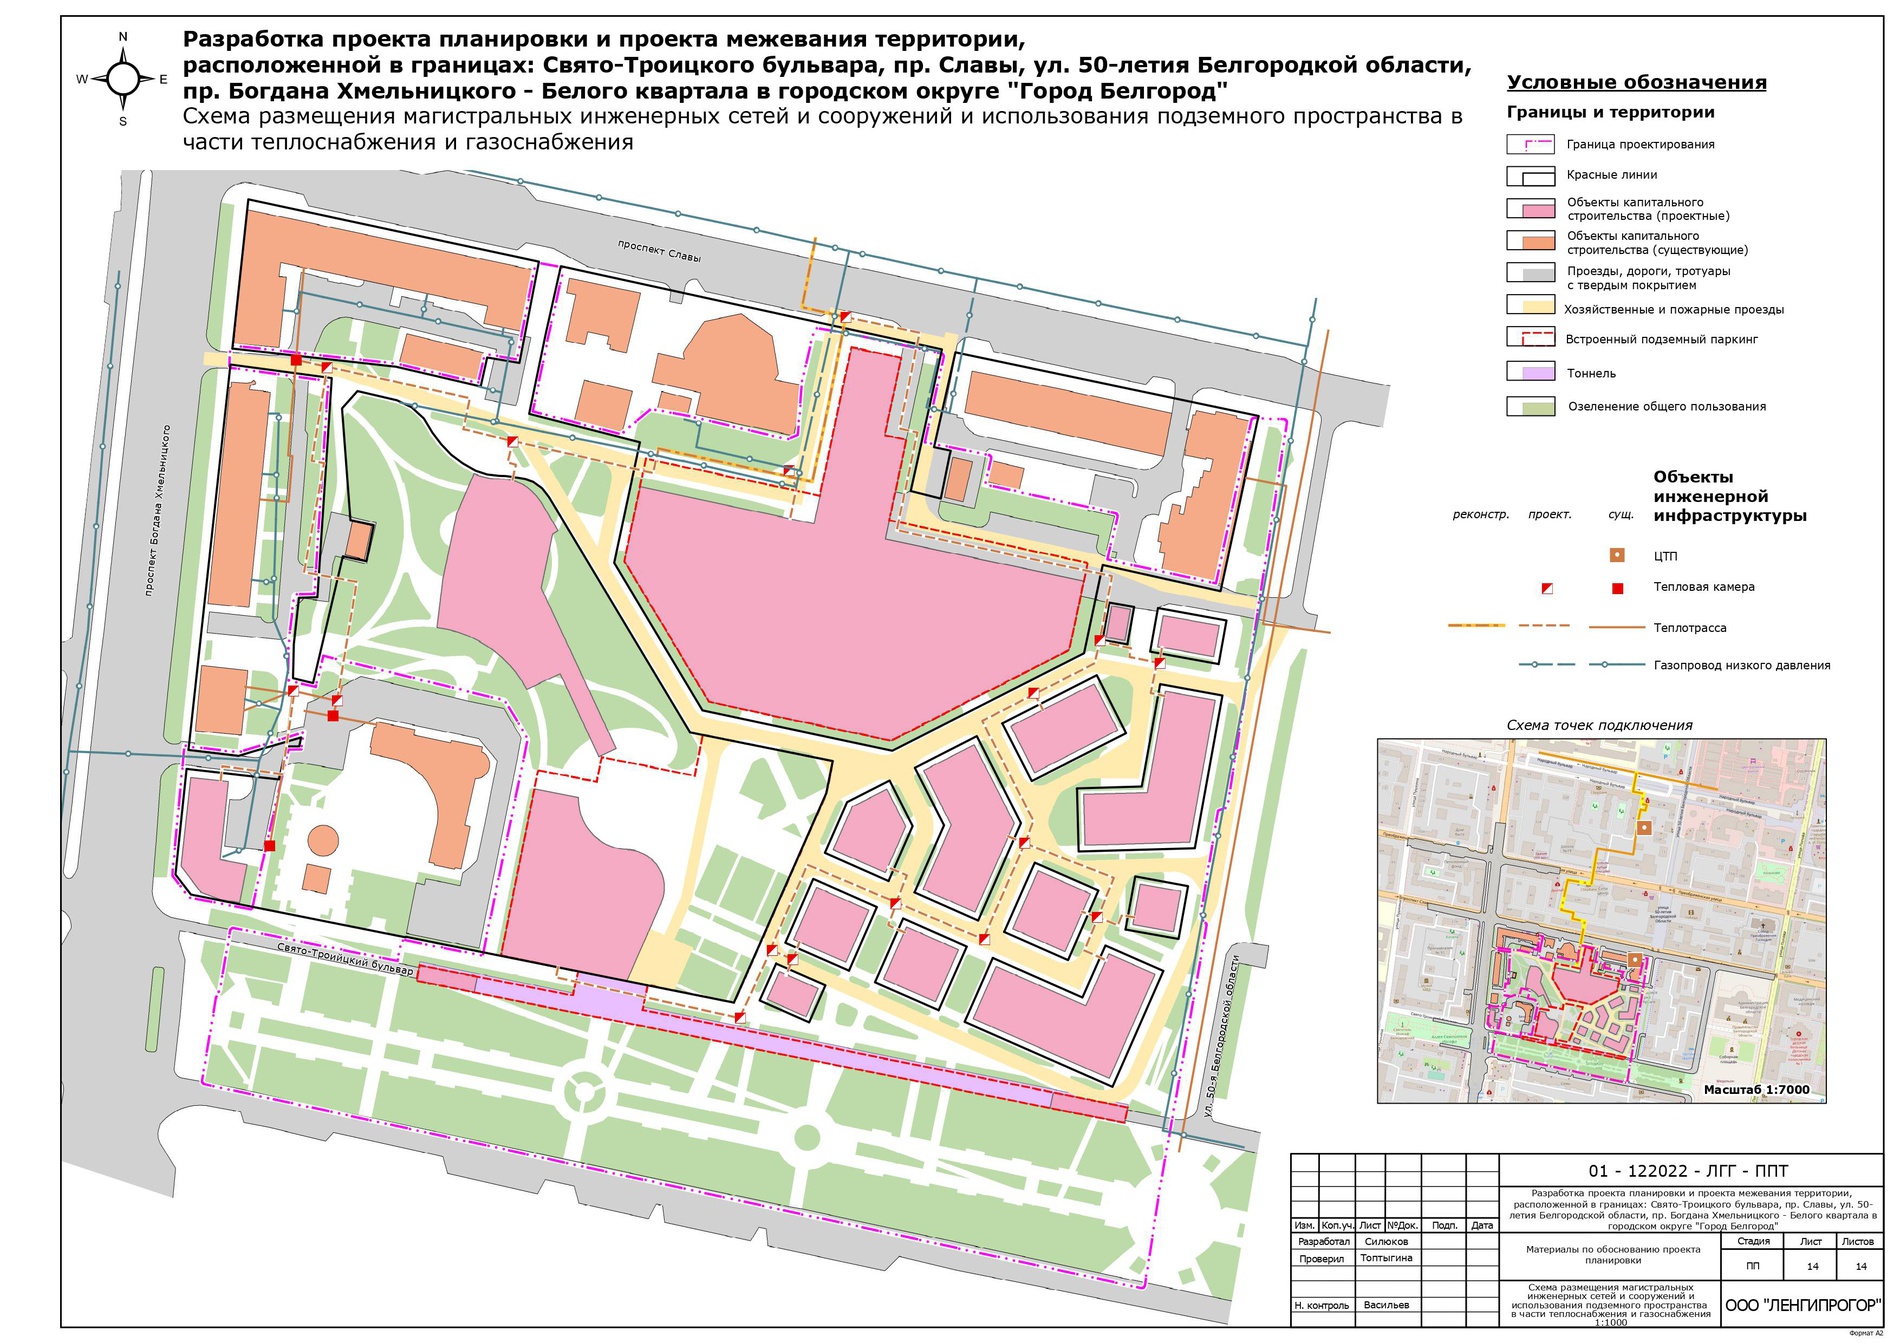 В строительство «Белого квартала» в Белгороде вложат более 10 миллиардов рублей